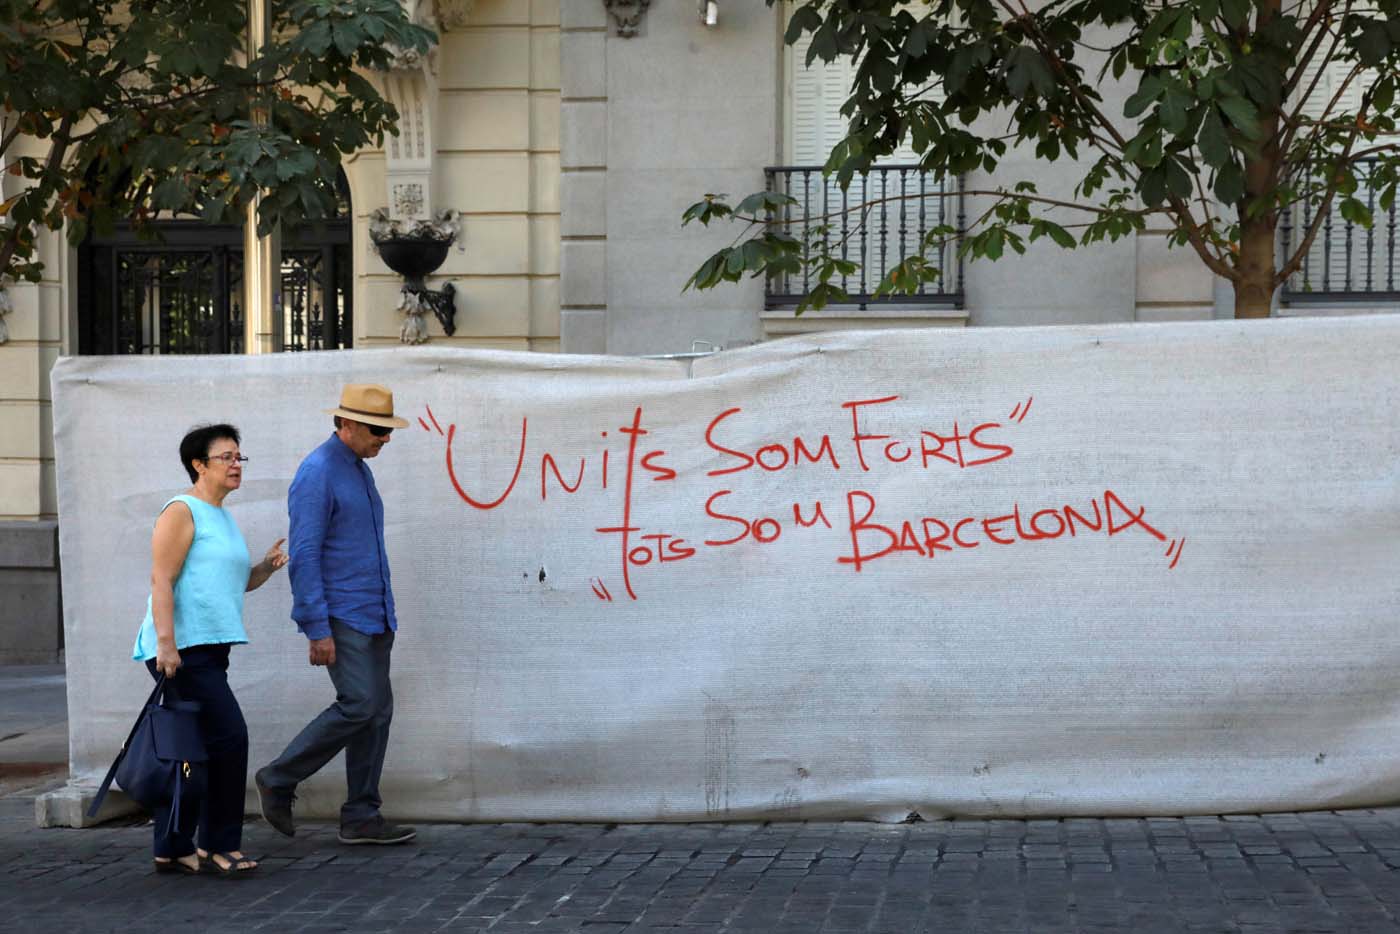 La OMT condena enérgicamente el atentado perpetrado en Barcelona